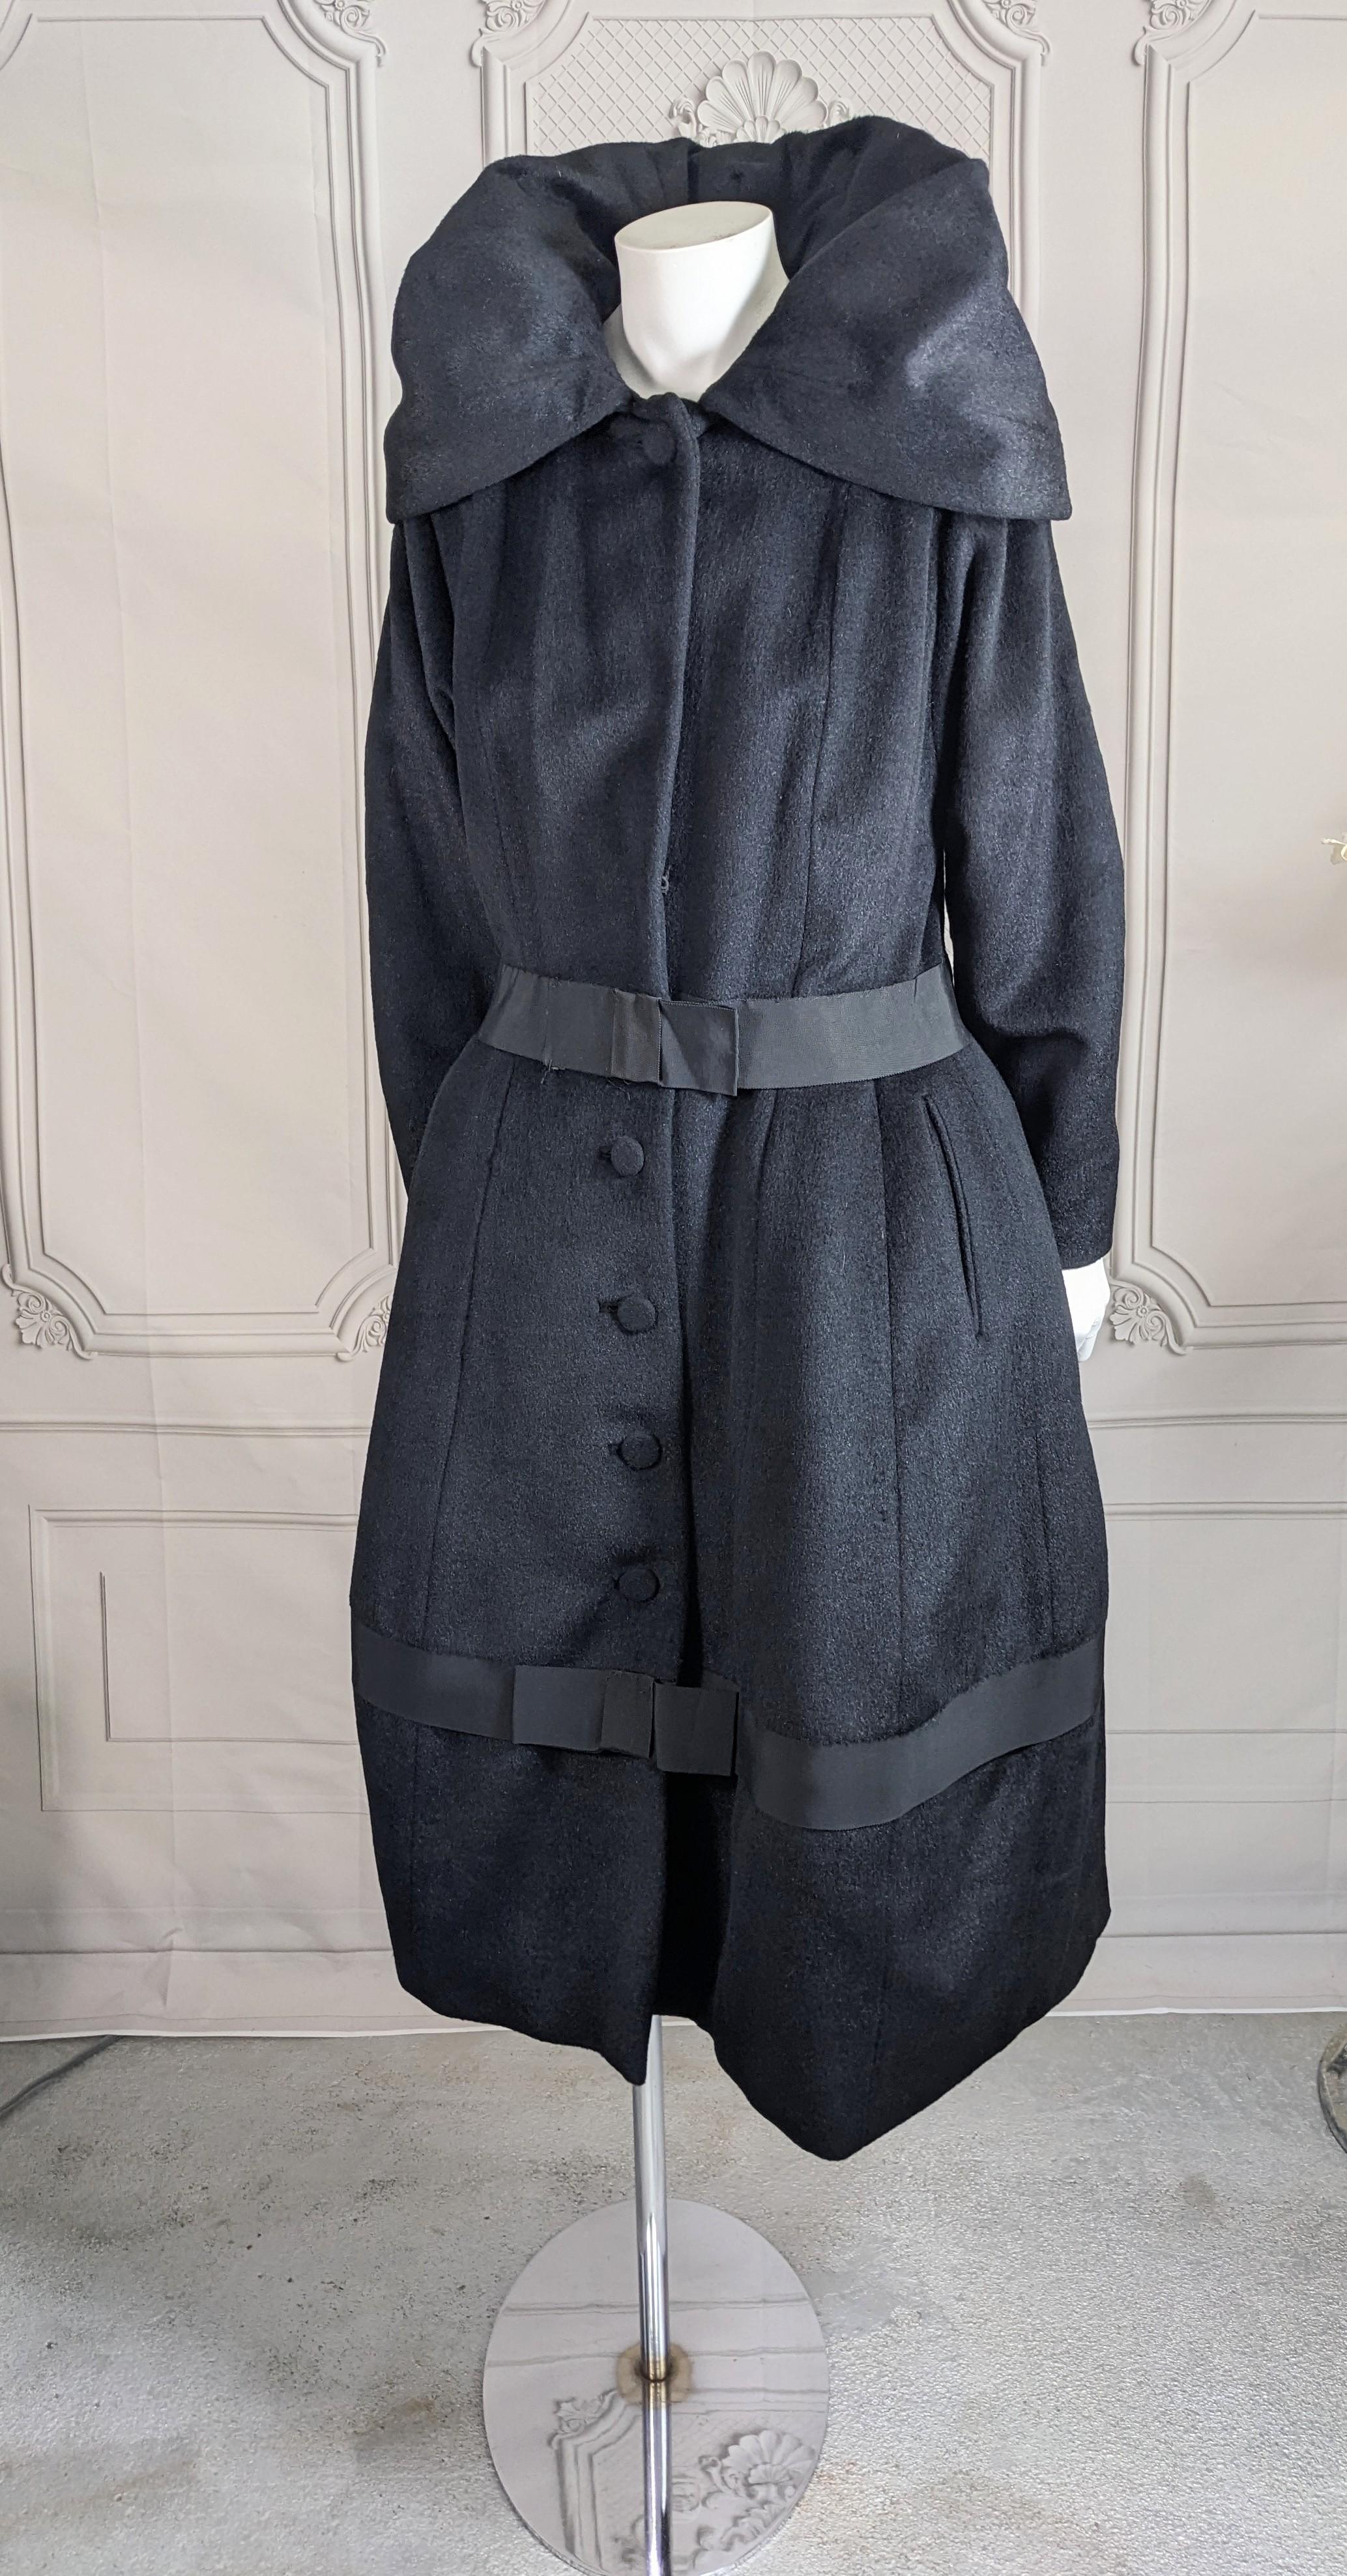 Erstaunlich Lilli Ann Edwardian inspiriert Laterne Mantel in tiefschwarz Robbenfell wie Wolle. Geschlossen zu tragen, mit hohem, getuftetem Kragen und laternenförmigem Rockteil für eine maximale Wirkung. Weiche, glatte Wolle mit Ripsbandbesatz an